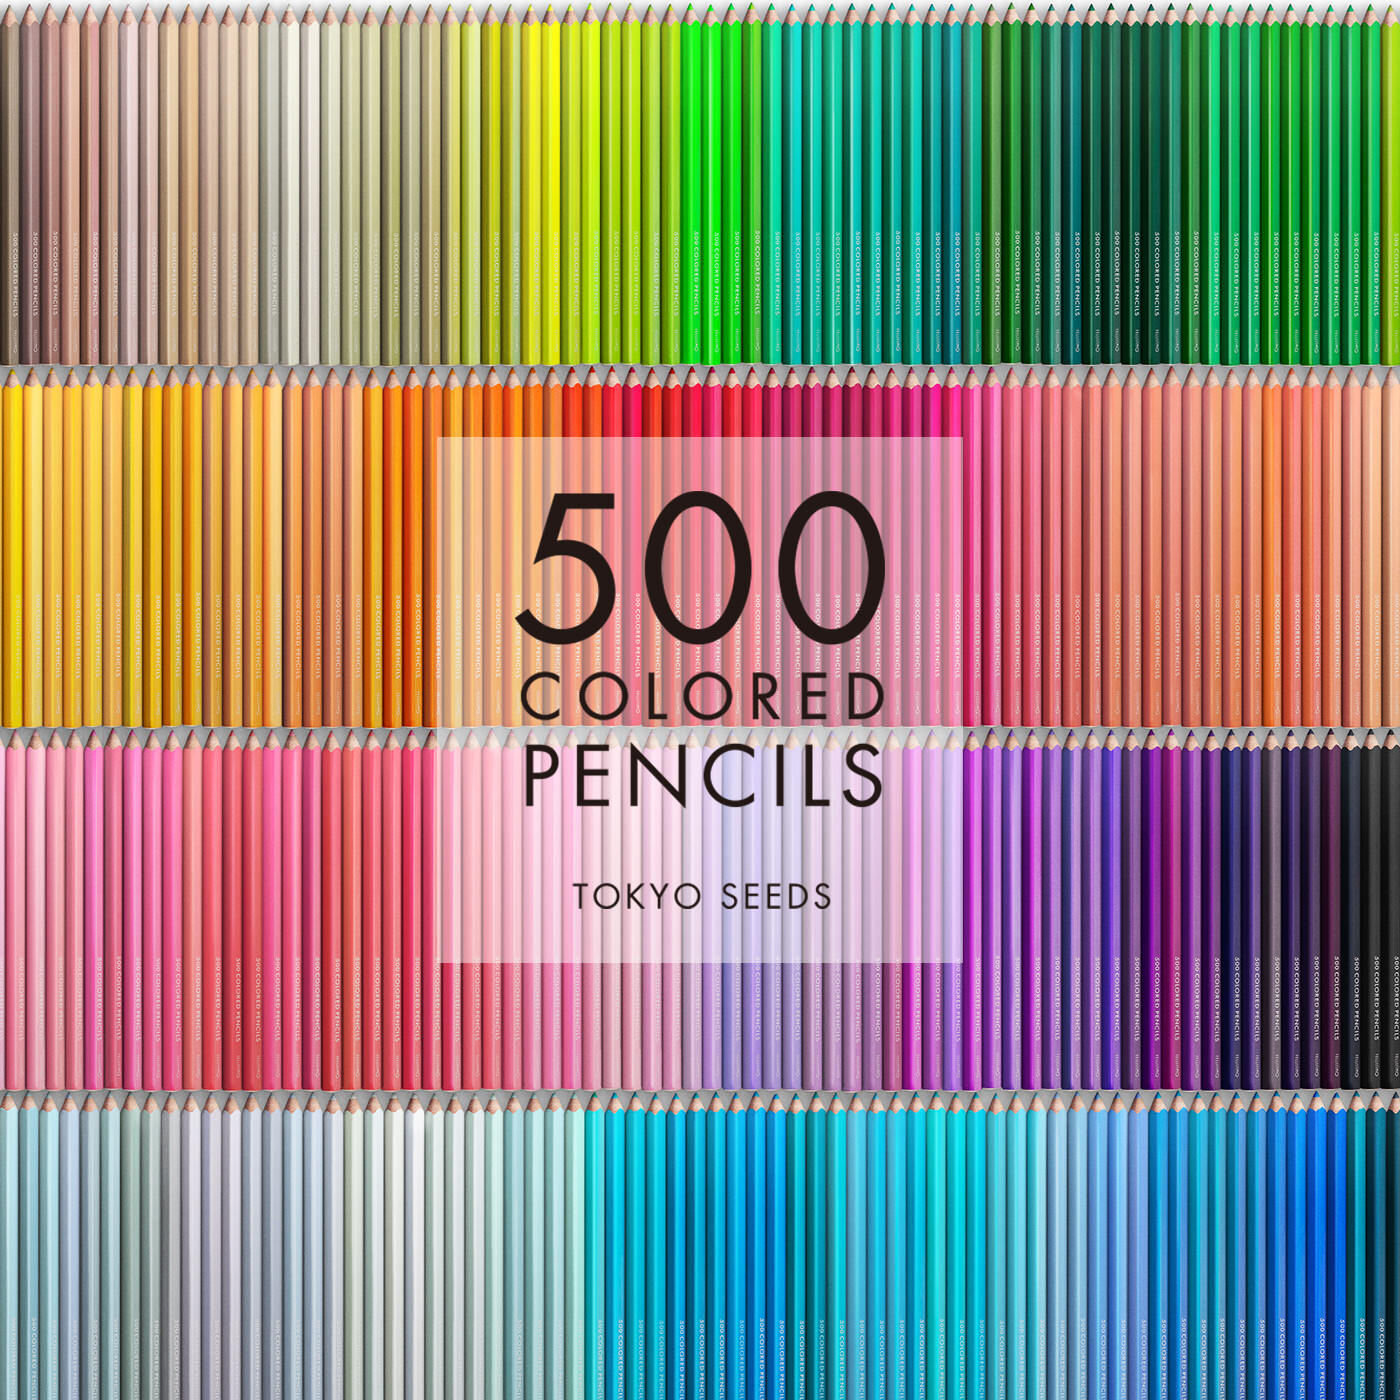 Real Stock|【401/500 SANDY FEET】500色の色えんぴつ TOKYO SEEDS|1992年、世界初の「500色」という膨大な色数の色えんぴつが誕生して以来、その販売数は発売当初から合わせると、世界55ヵ国10万セット以上。今回、メイド・イン・ジャパンにこだわり、すべてが新しく生まれ変わって登場しました。